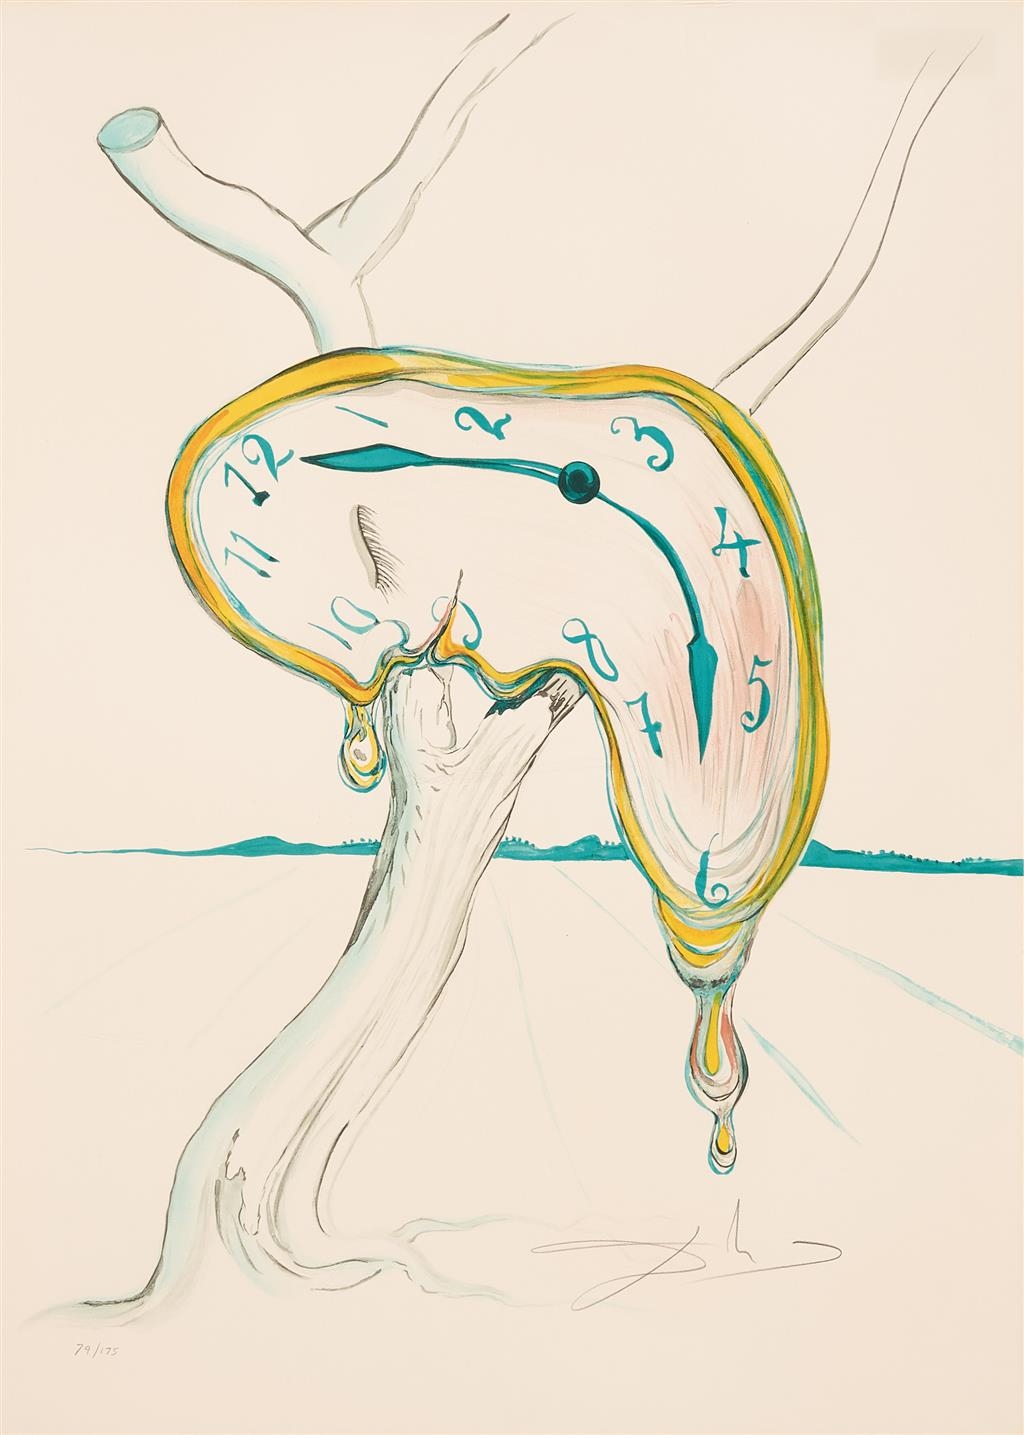 Melting Clock by Salvador Dalí